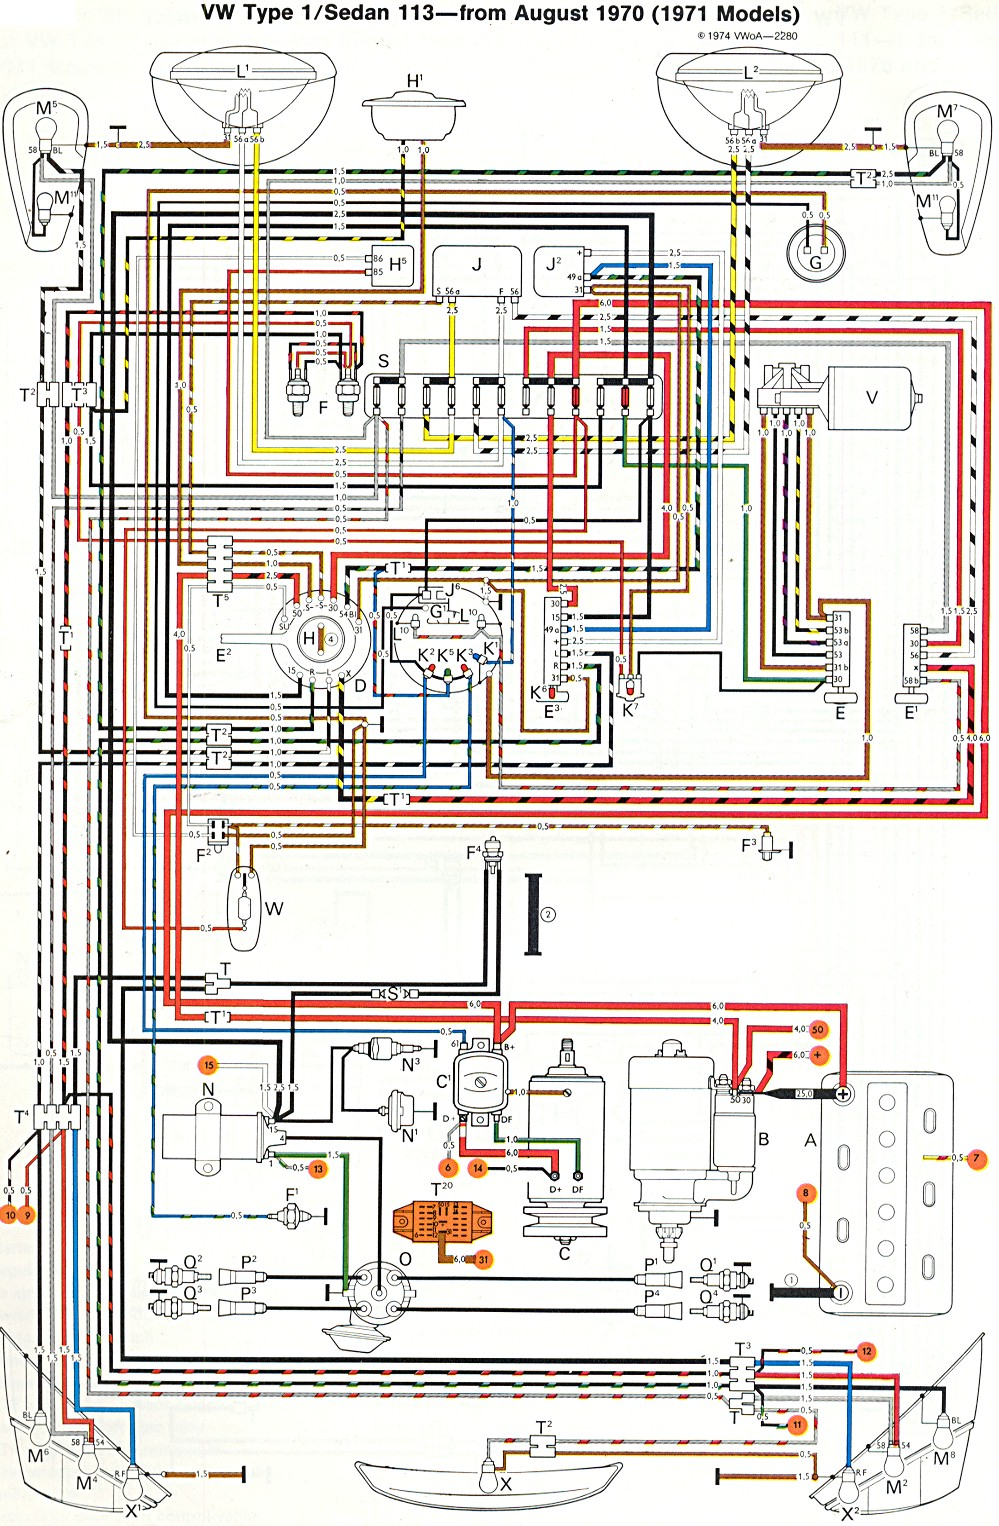 1973 Vw Beetle Wiring Diagram | Wiring Diagram - 1973 Vw Beetle Wiring Diagram